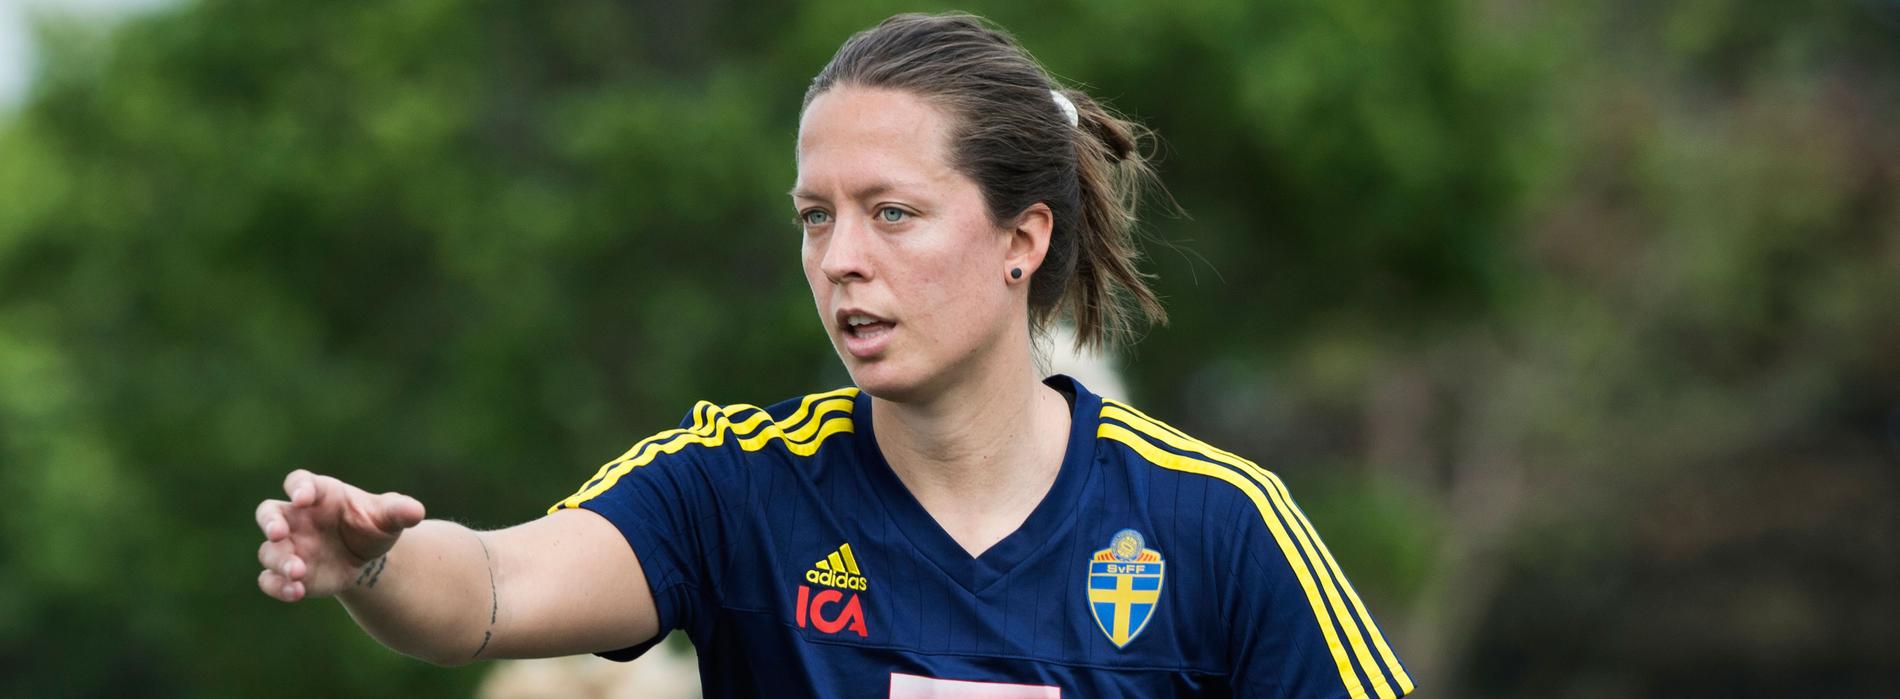 Lina Nilsson
Klubb: Rosengård
Född: 1987-06-17 
Landskamper(mål): 64(3)